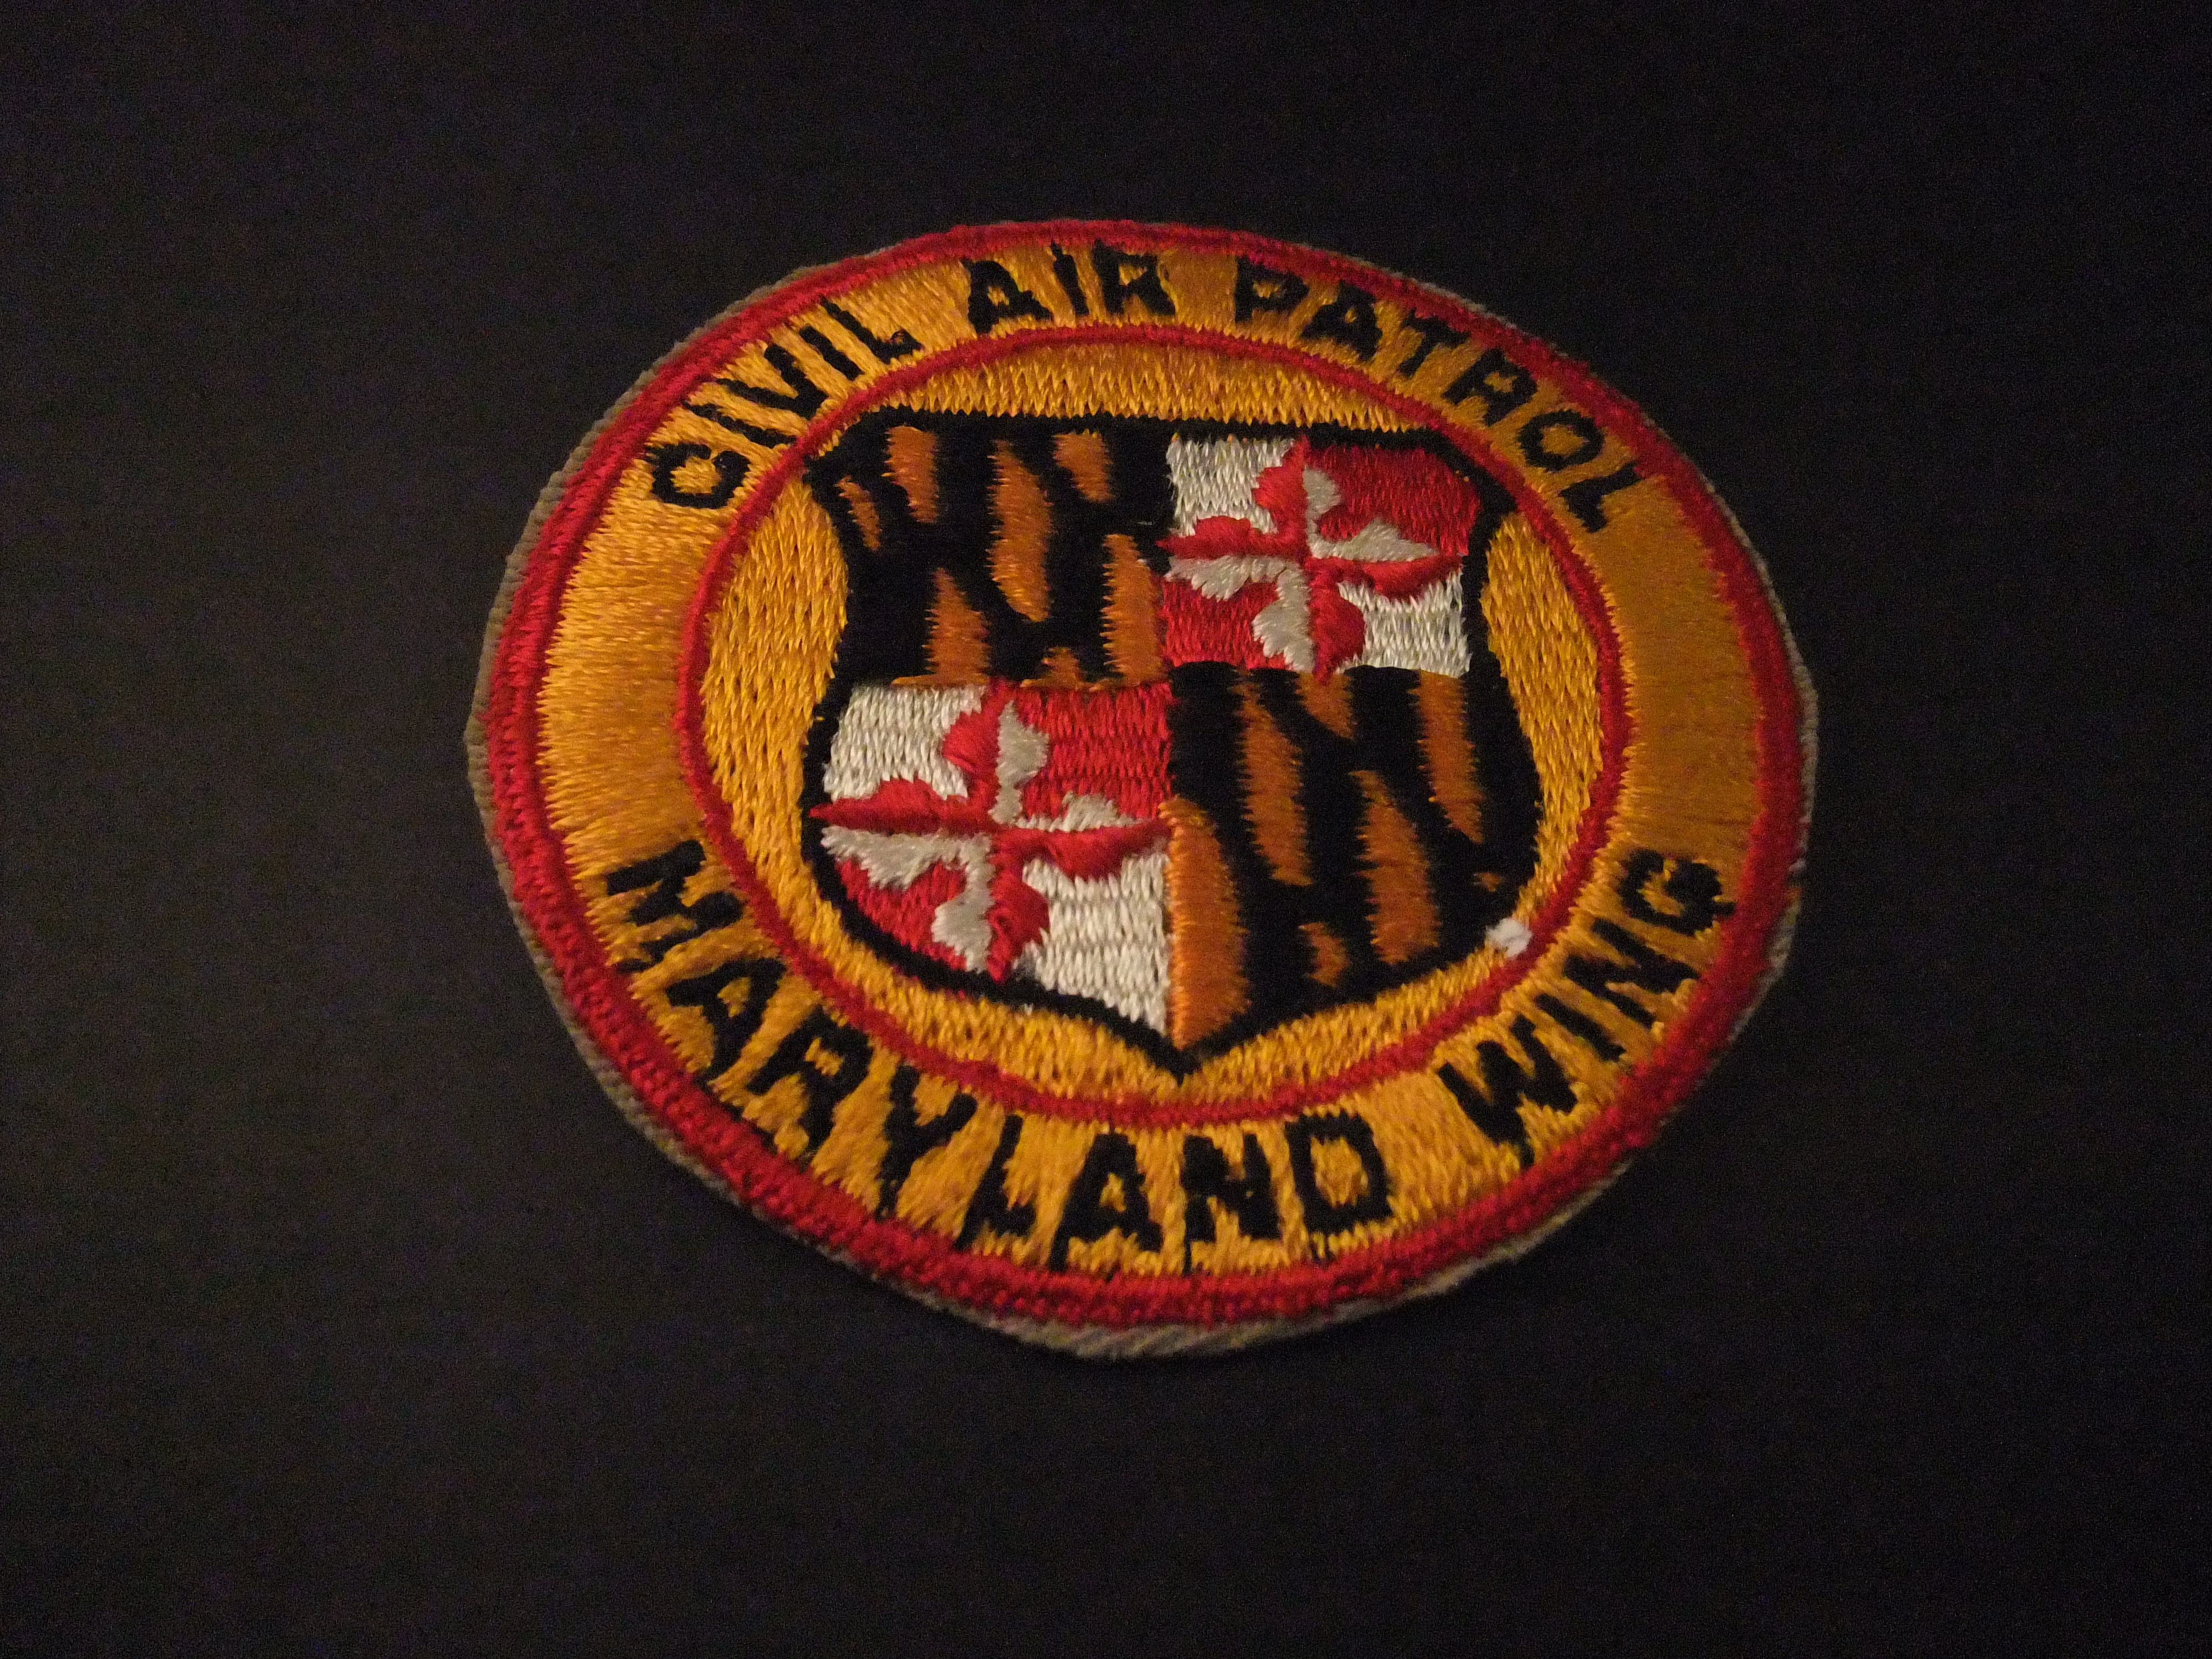 Civil Air Patrol Maryland Wing hoogste rang Luchtmacht van de Verenigde Staten